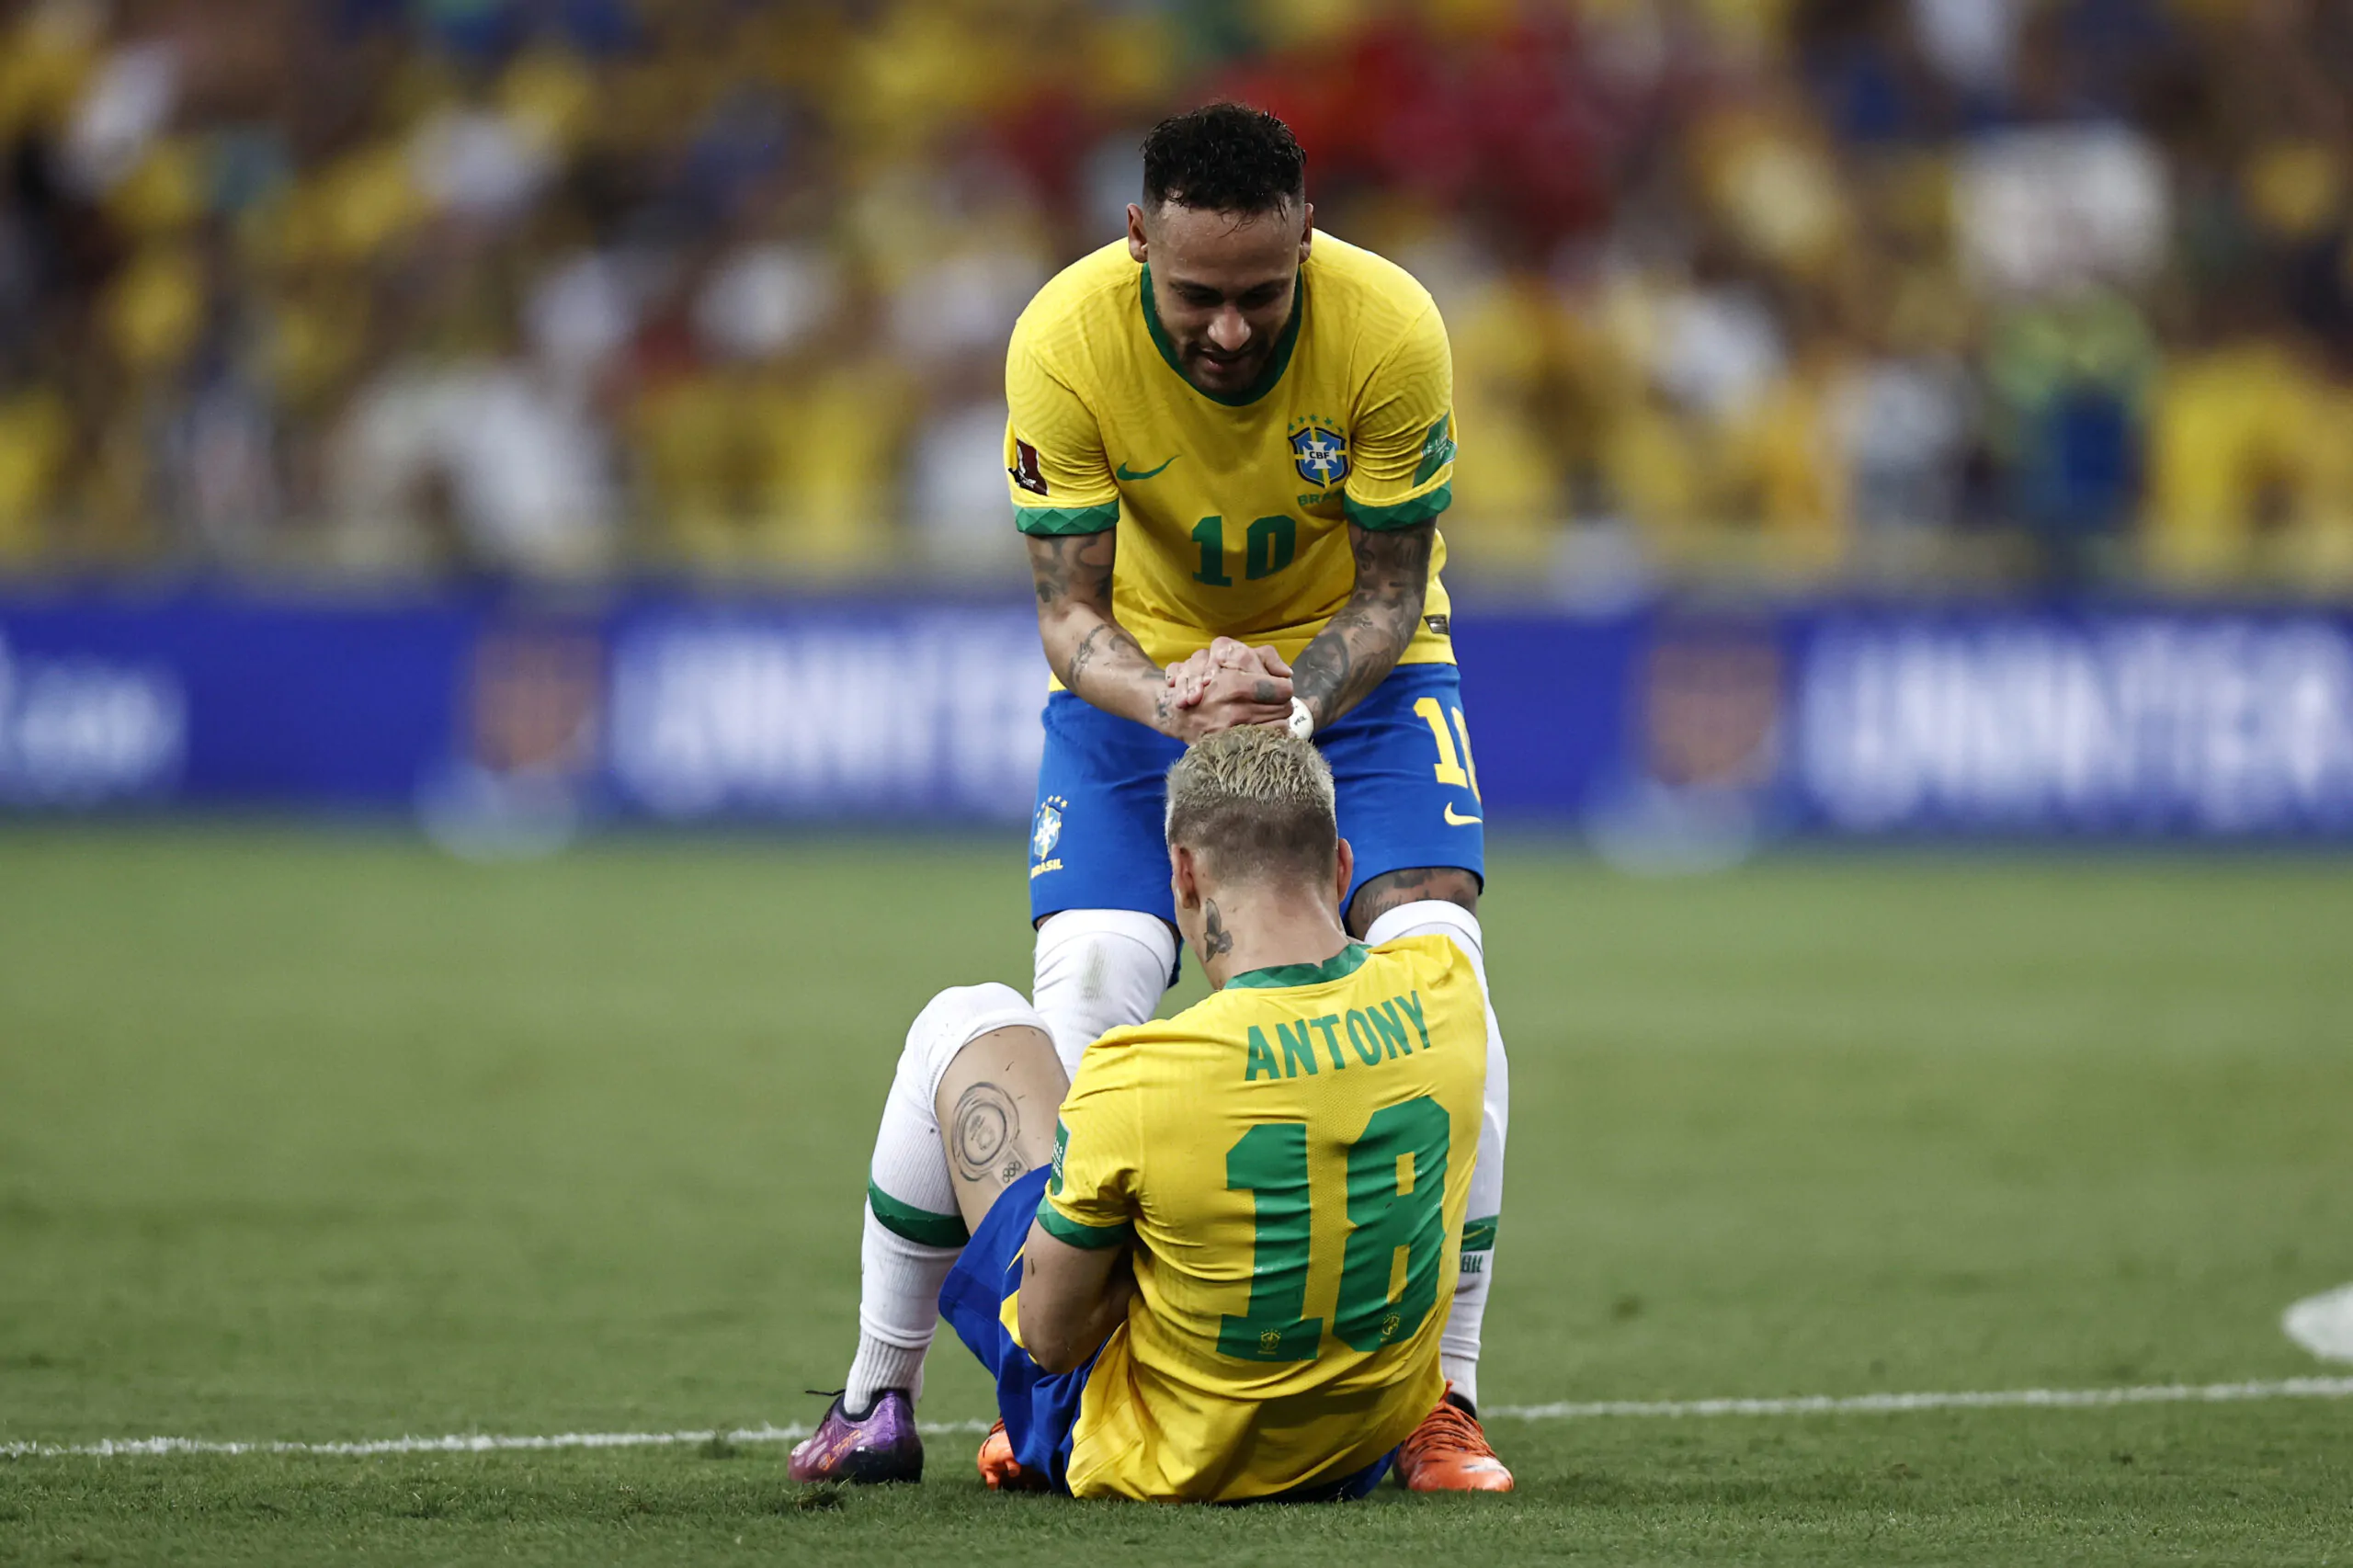 Neymar difende Antony dopo le critiche: “Non cambiare mai”